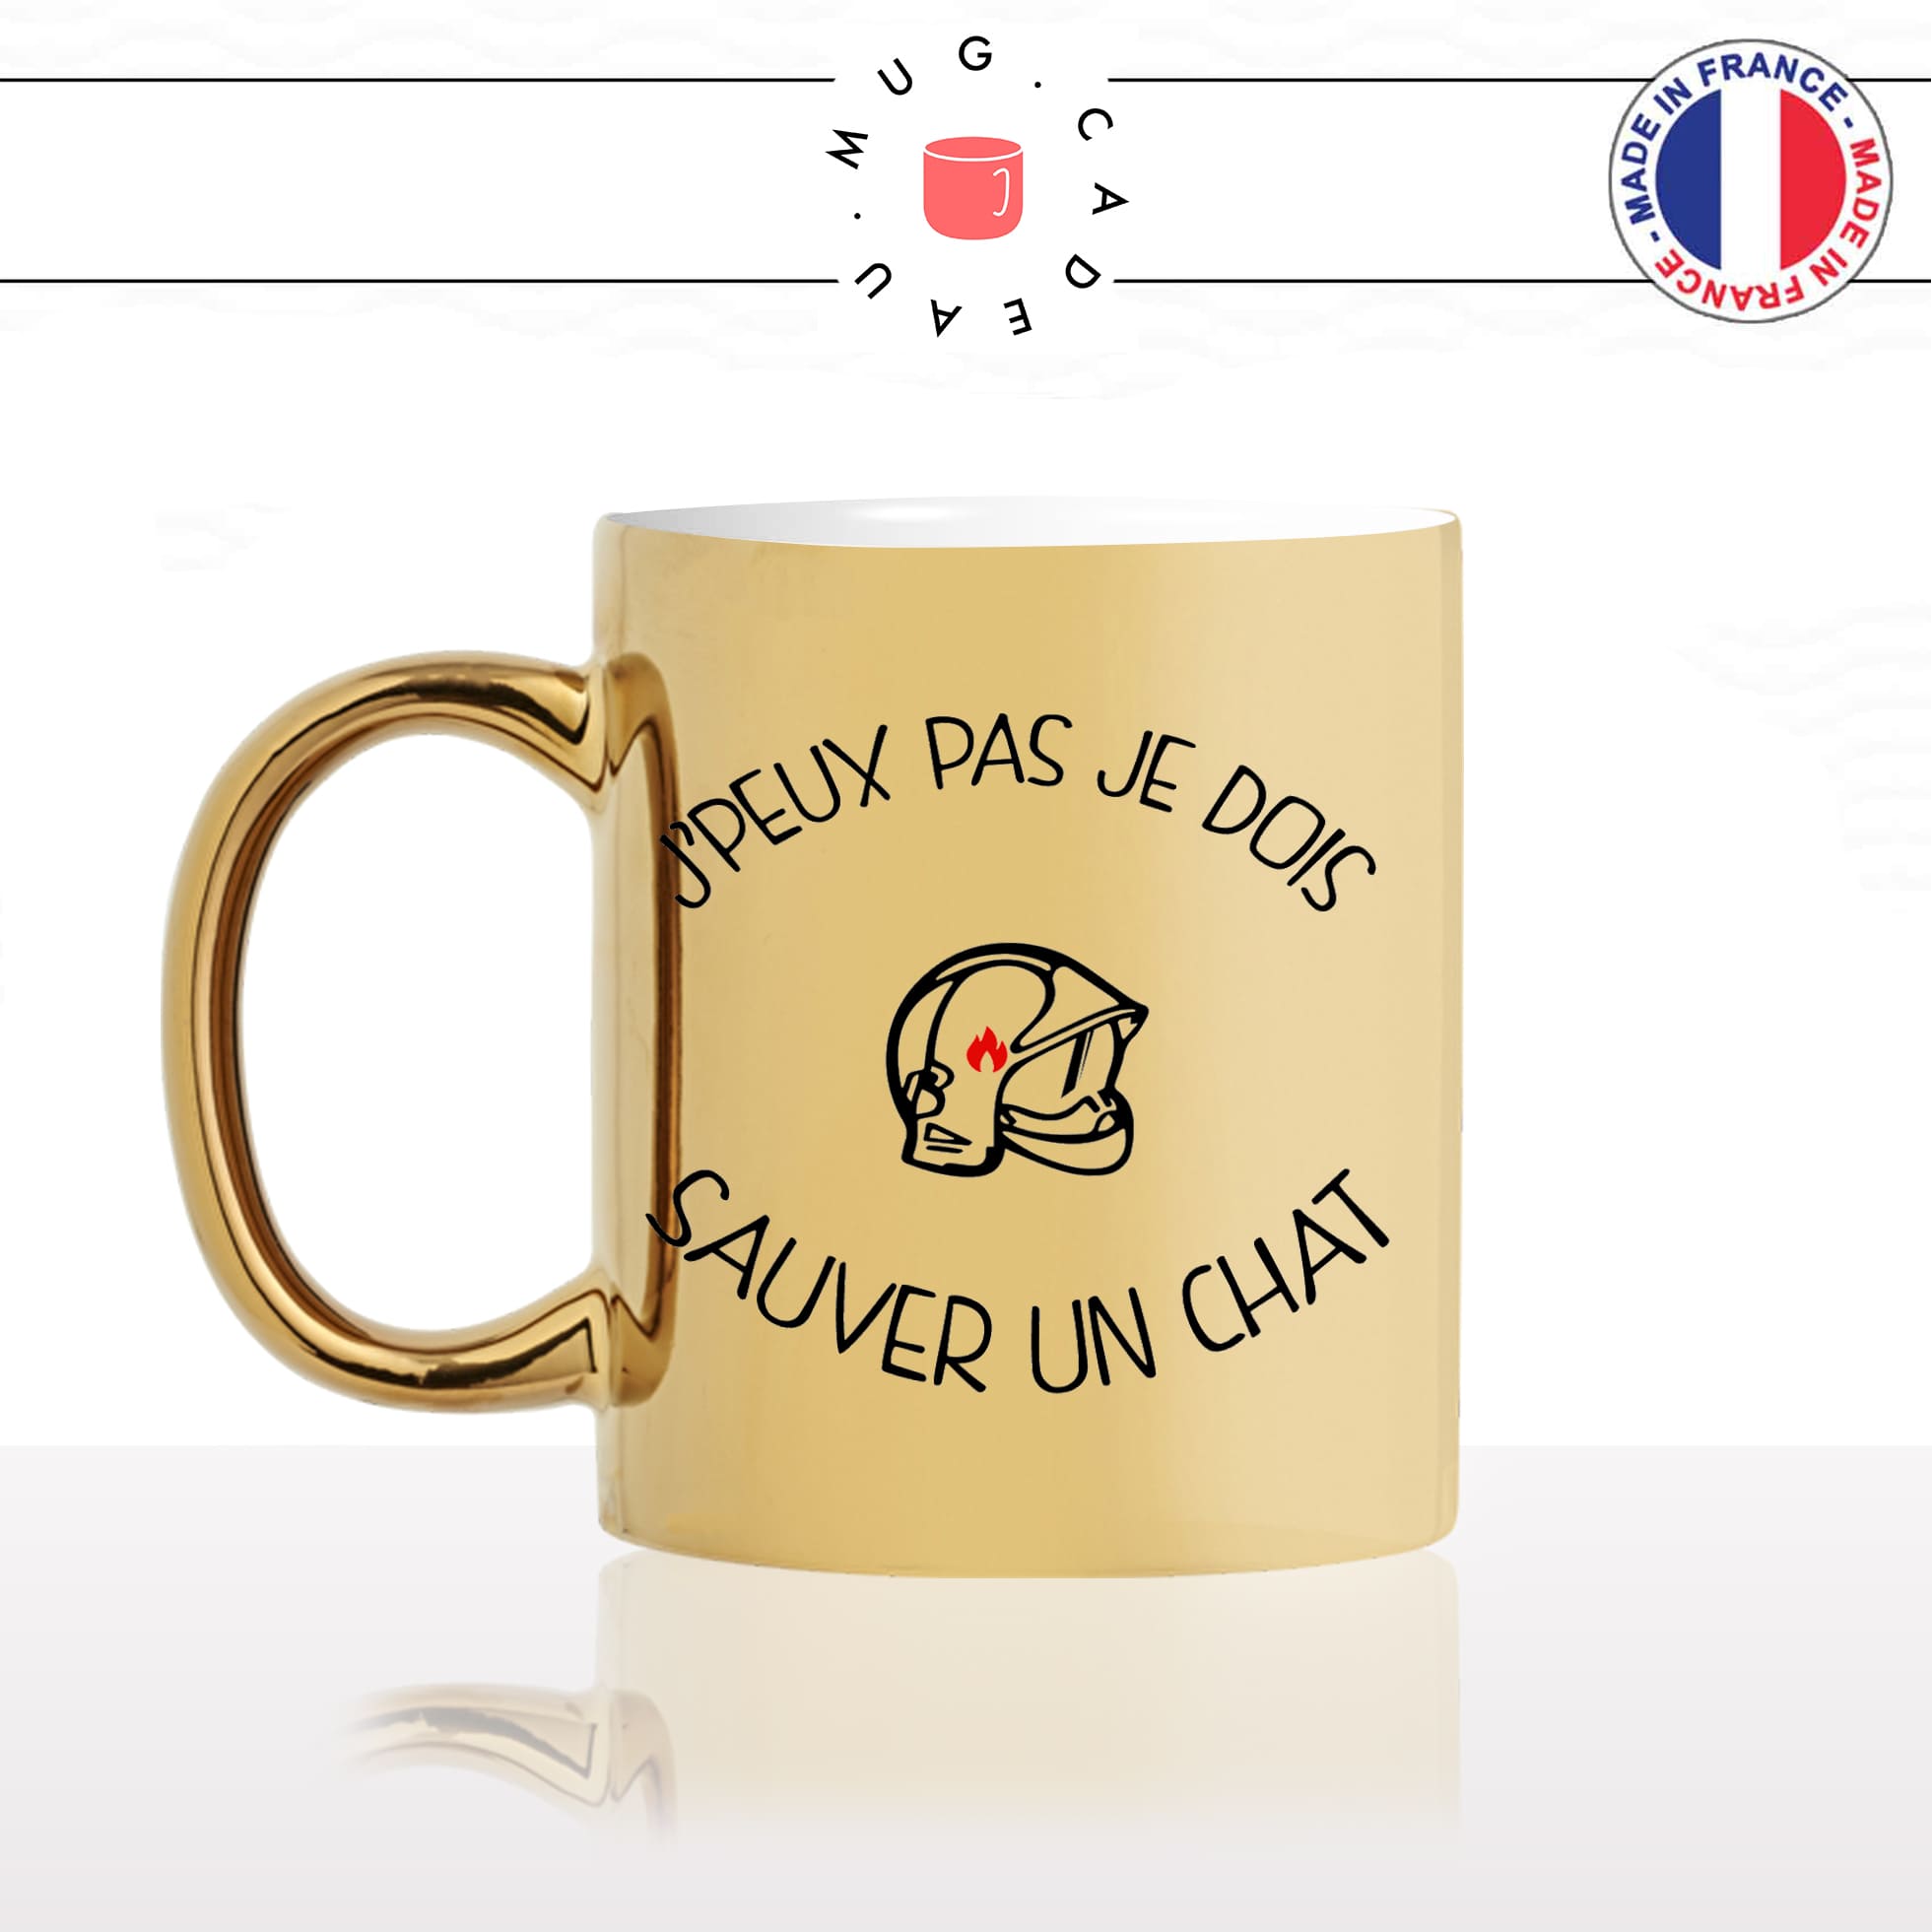 mug-tasse-or-gold-doré-jpeux-pas-je-dois-sauver-un-chat-pompier-volontaire-caserne-sexy-casque-collegue-personnalisé-fun-idée-cadeau-café-thé